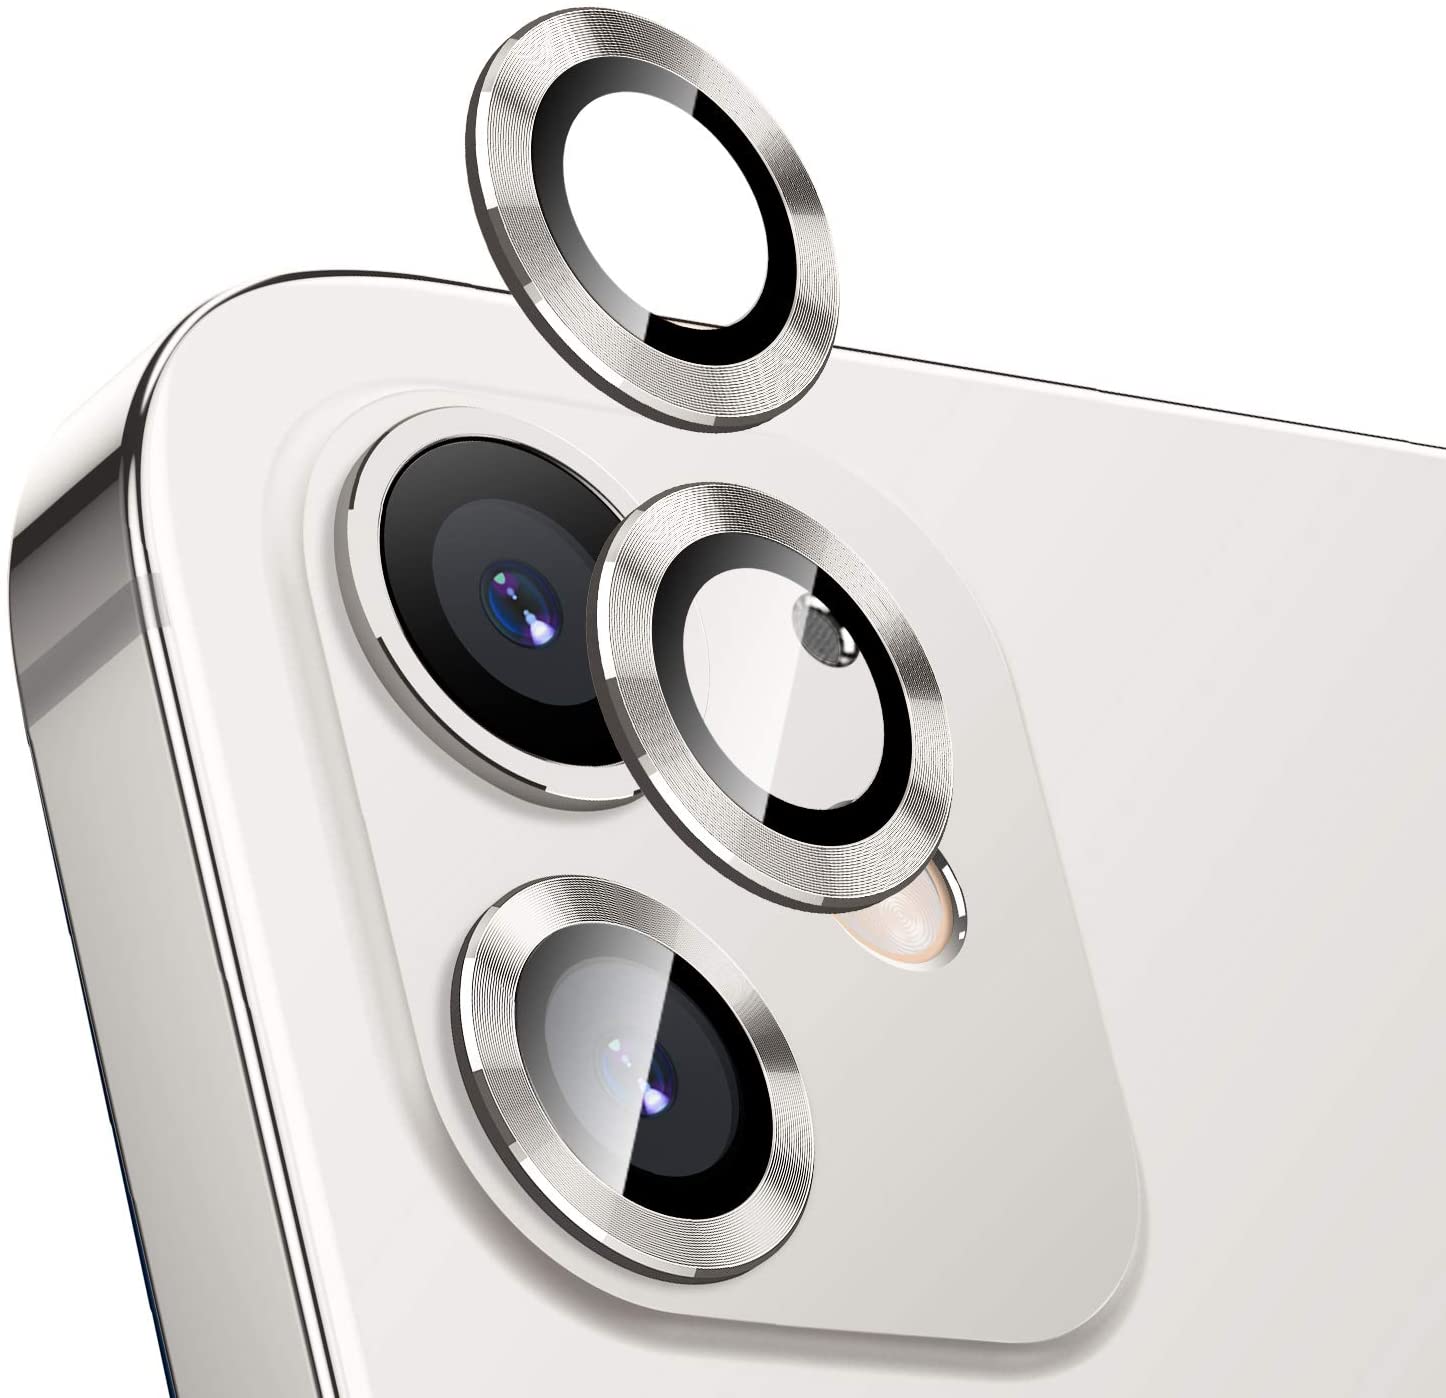 Bộ miếng dán kính cường lực bảo vệ Camera iPhone 11 (6.1 inch) hiệu KUZOOM Lens Ring